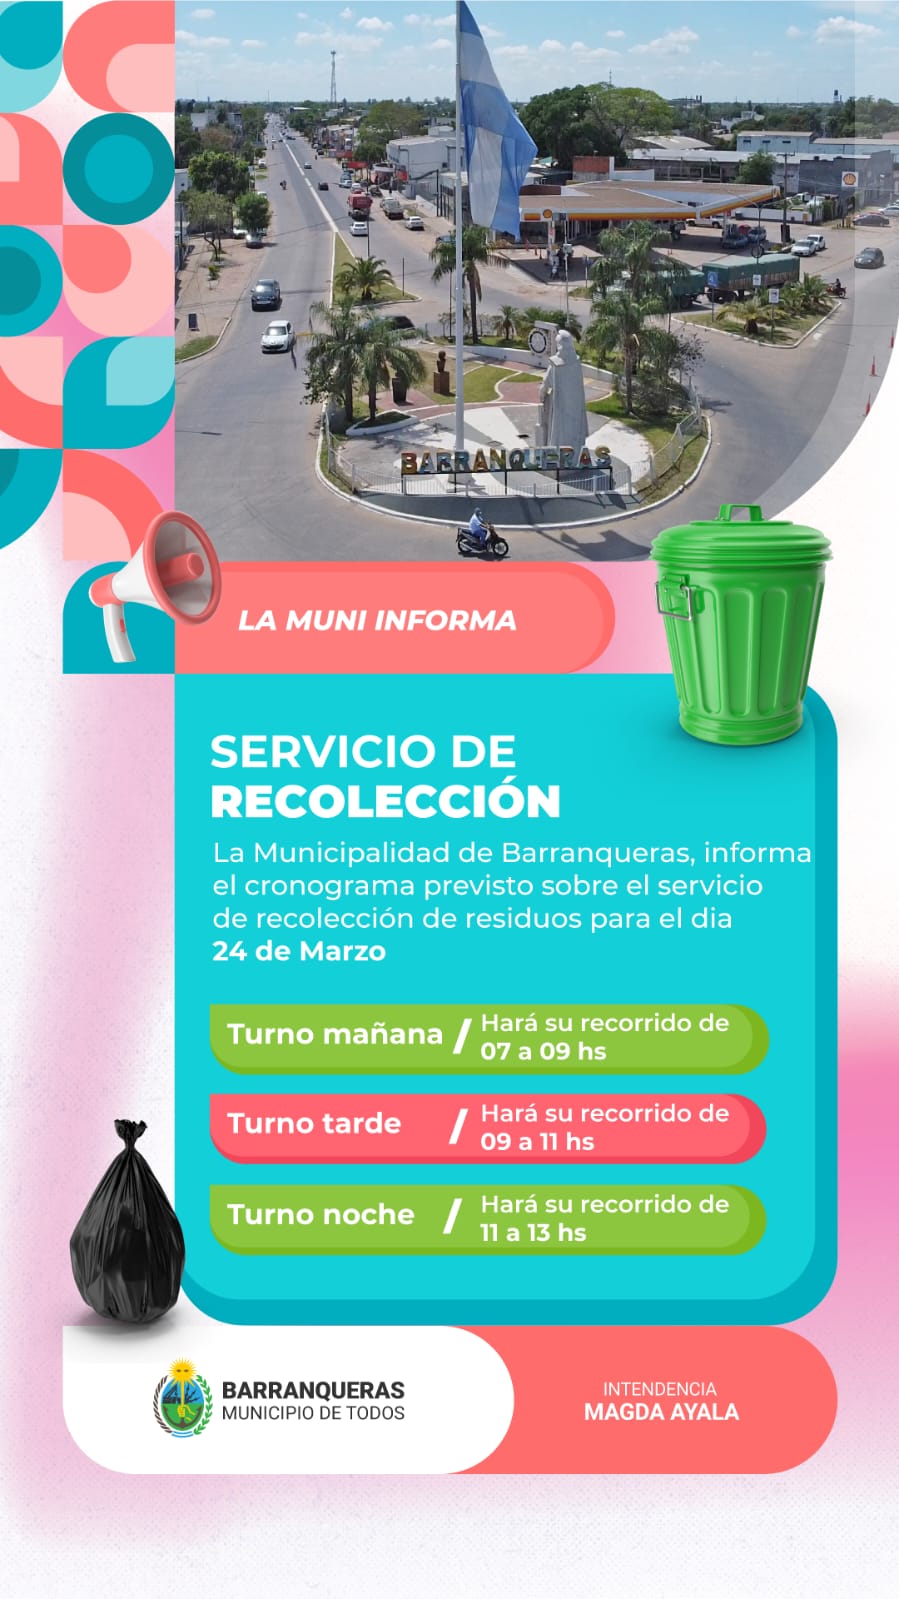 Barranqueras informa cómo será la recolección de residuos este finde XL